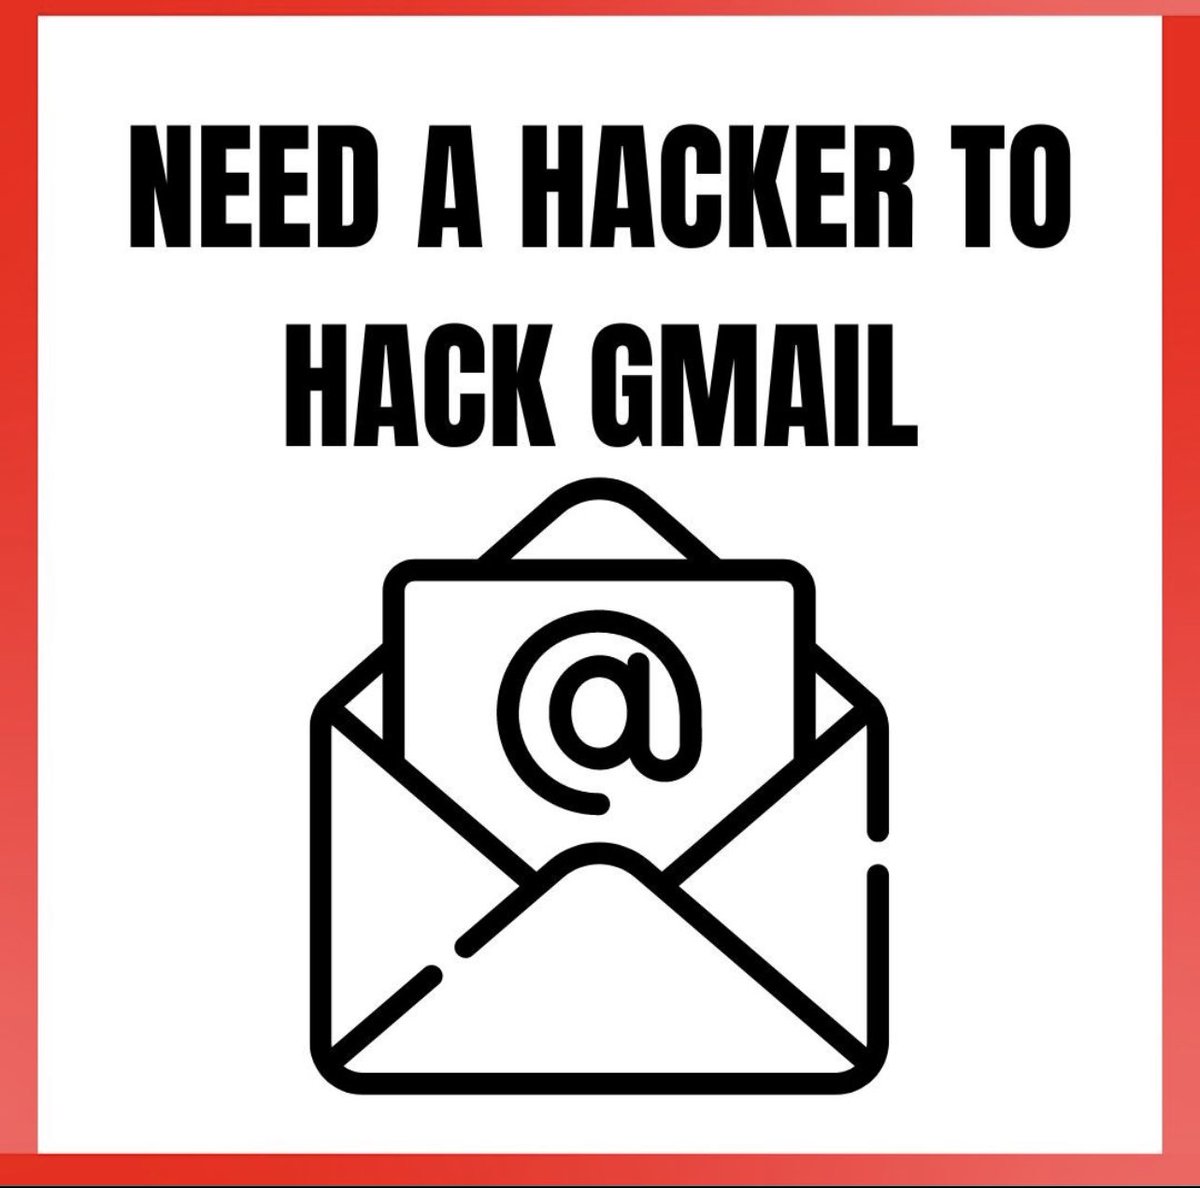 Hola, por favor contáctame para tu piratería y todas las cuentas de redes sociales recuperan a los tramposos inclinados a espiarlas #phonehack #gmail #locationhack #cybersecurity #spy #accountrecovery #ighacks